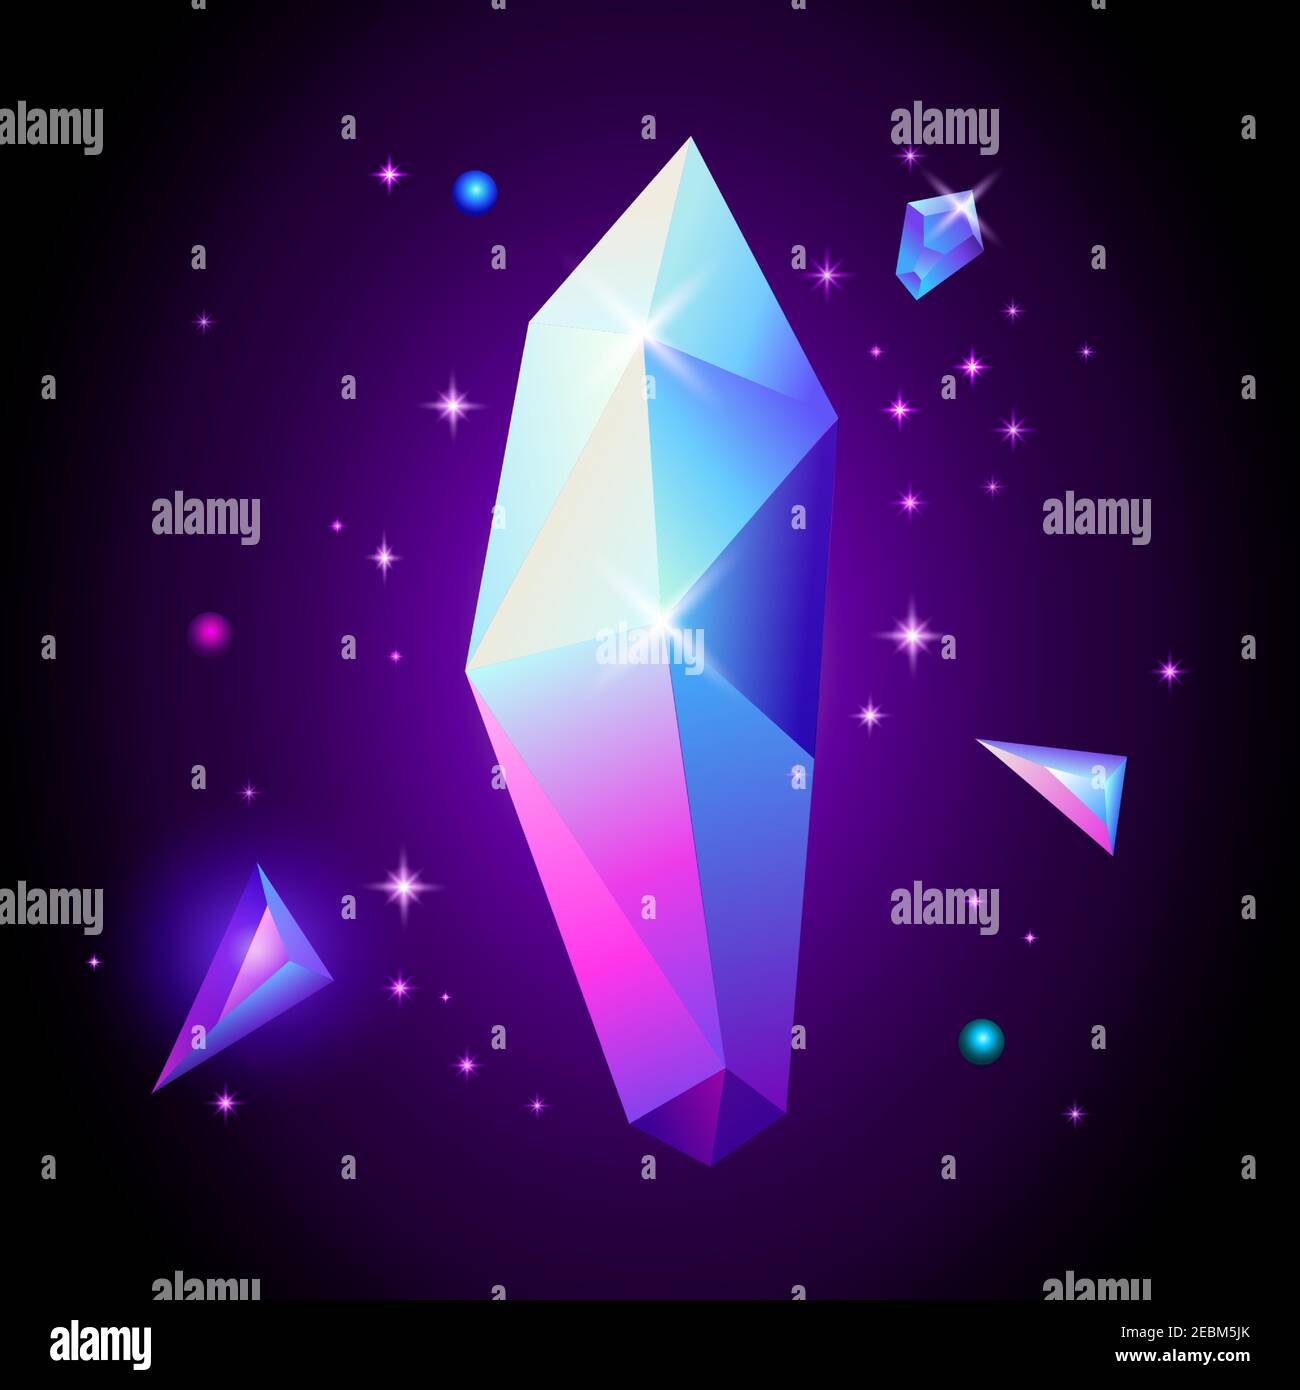 Affiche cosmique tendance abstraite avec pierres en cristal et formes géométriques pyramidales dans l'espace. Fond de galaxie néon. style années 80. Affiche avec géométrique Illustration de Vecteur